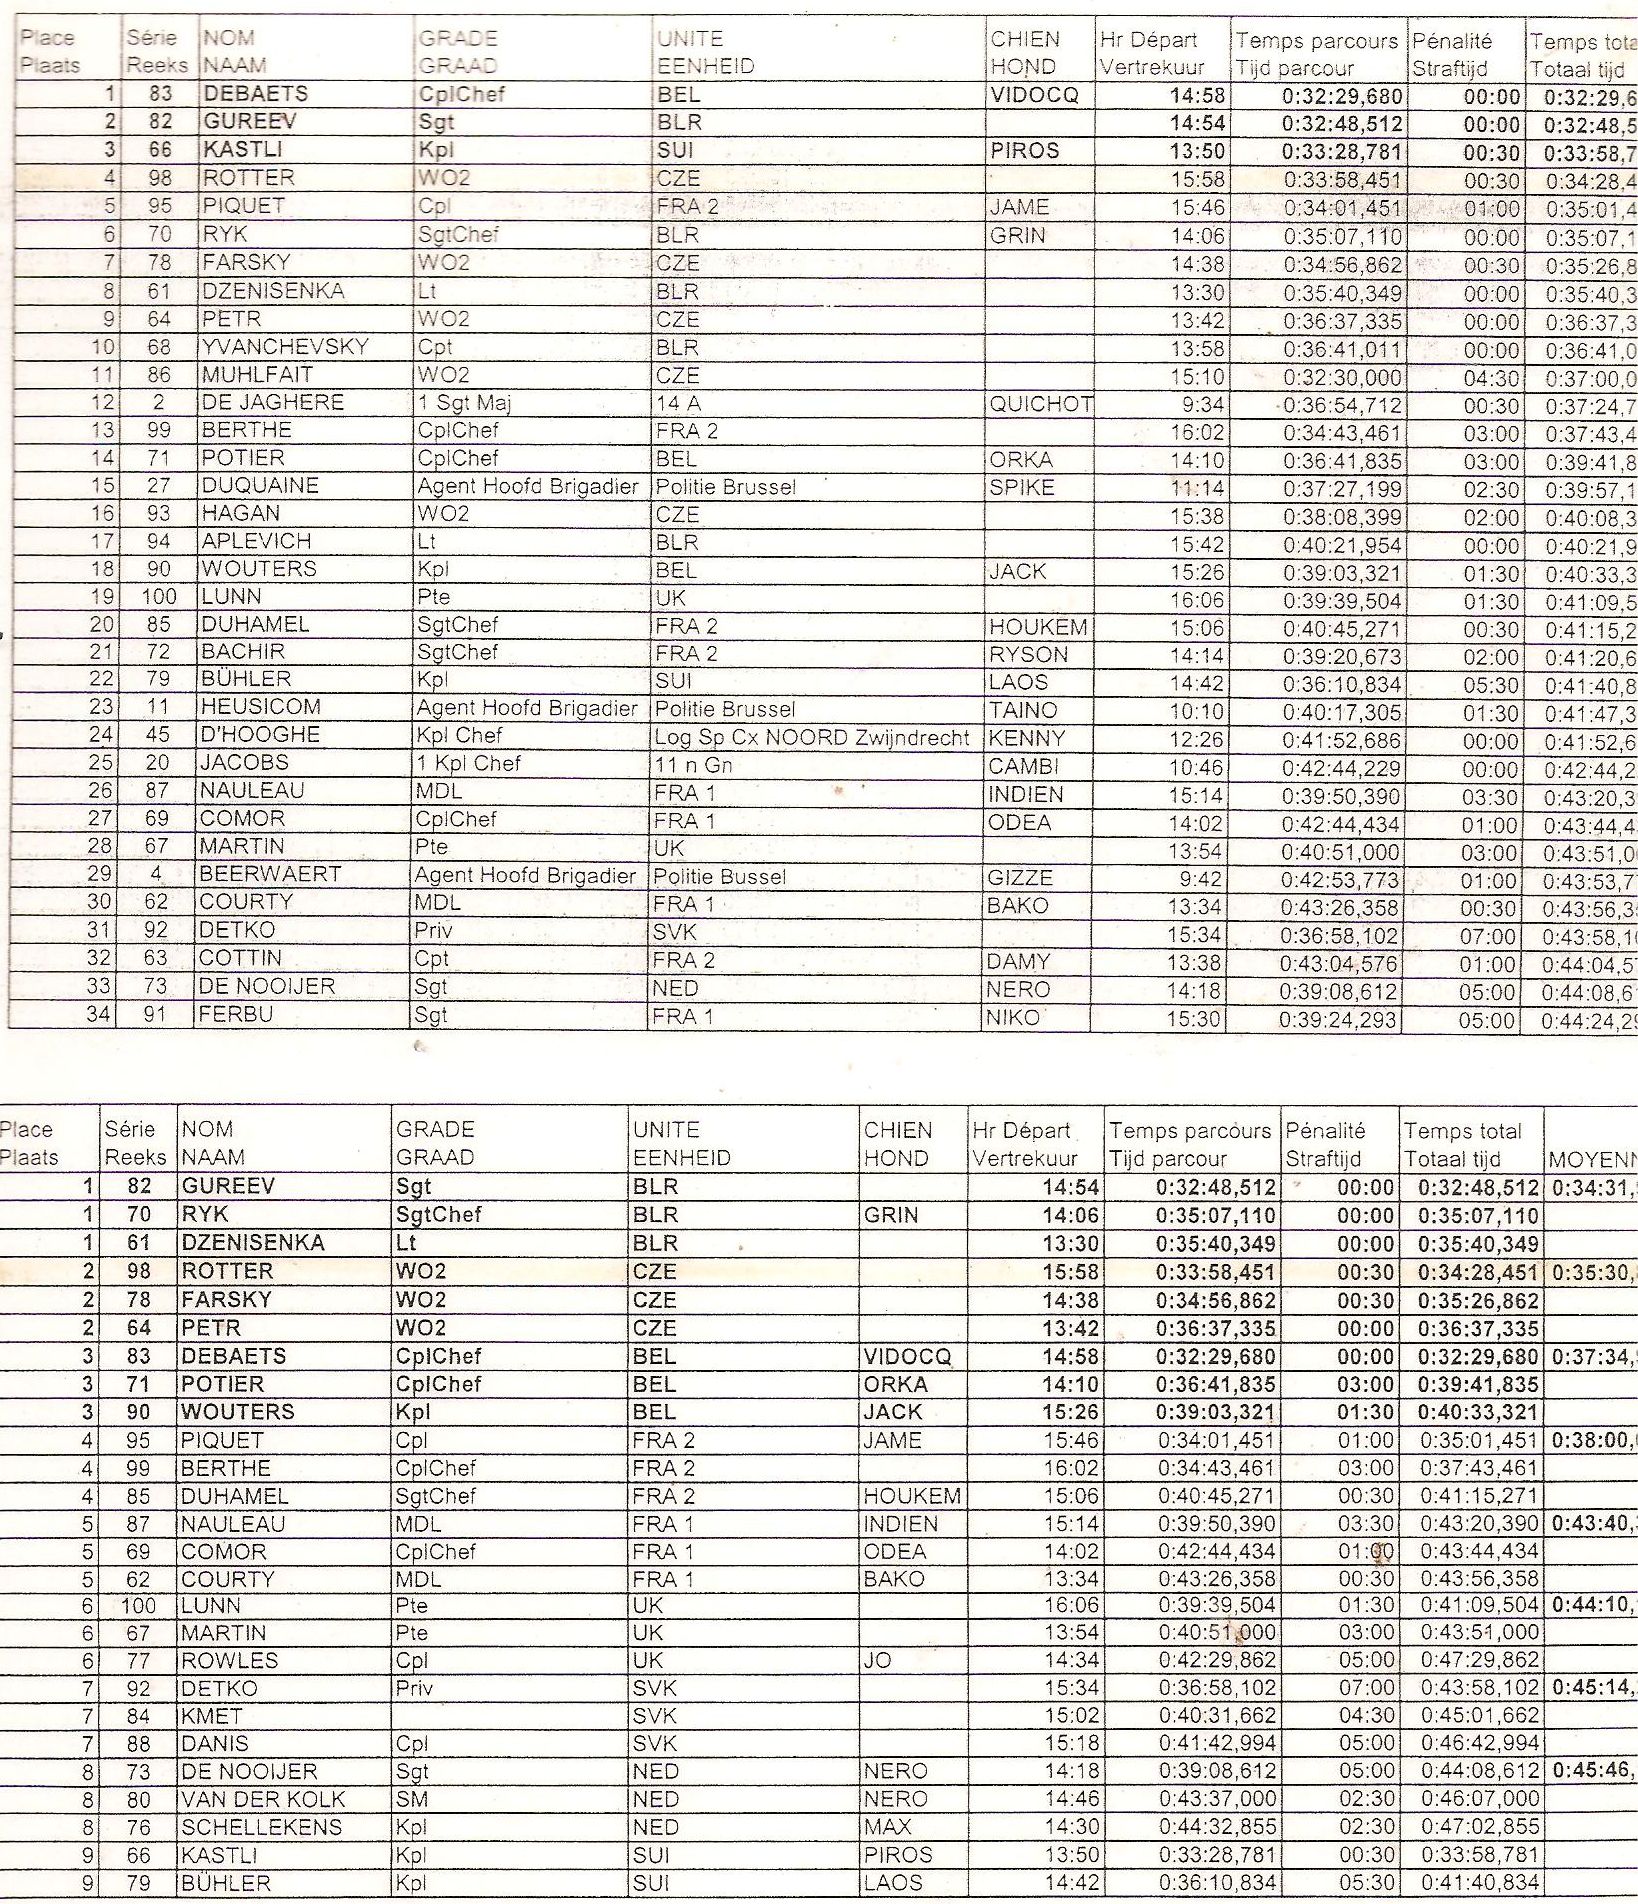 Celkové výsledky Belgie 2001 - Já s Fexíkem 4. místo a naše družstvo celkově stříbrné!!! 